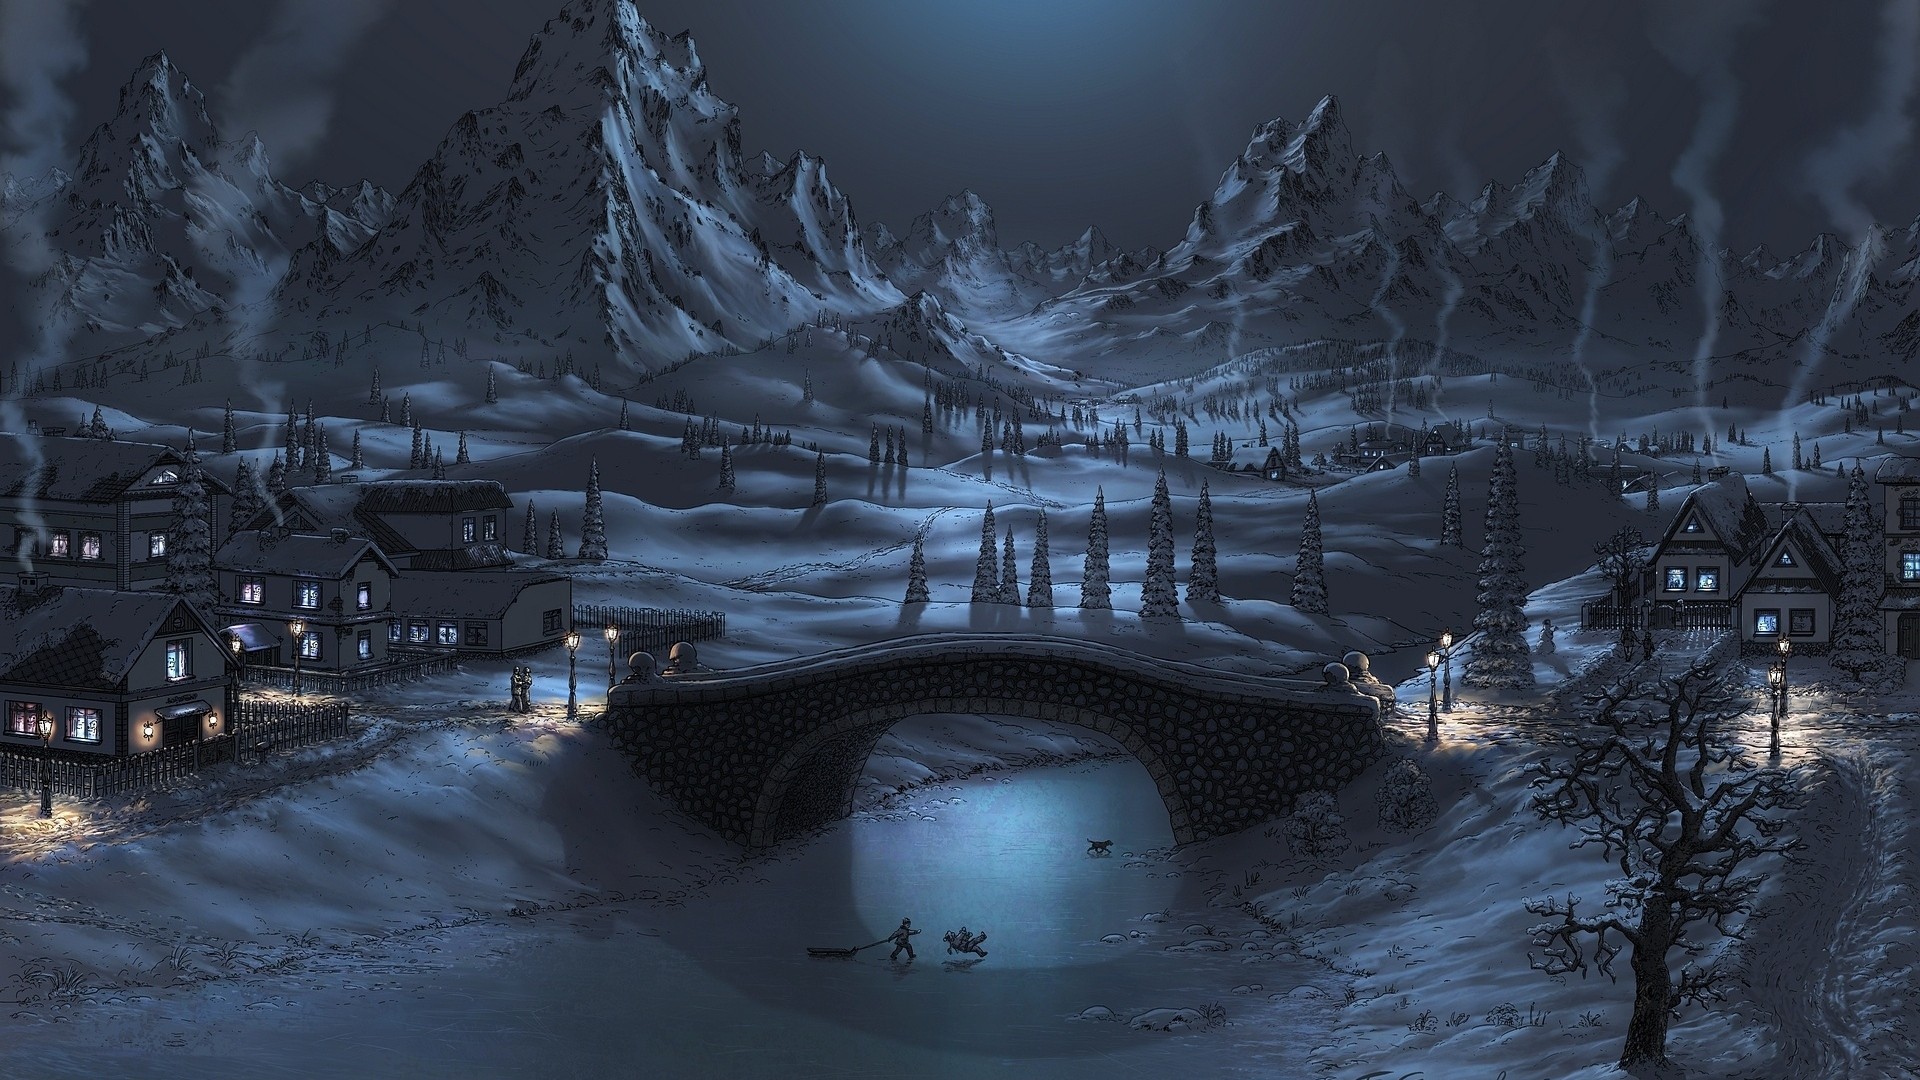 Night Winter Landscape Wallpaper Desktop